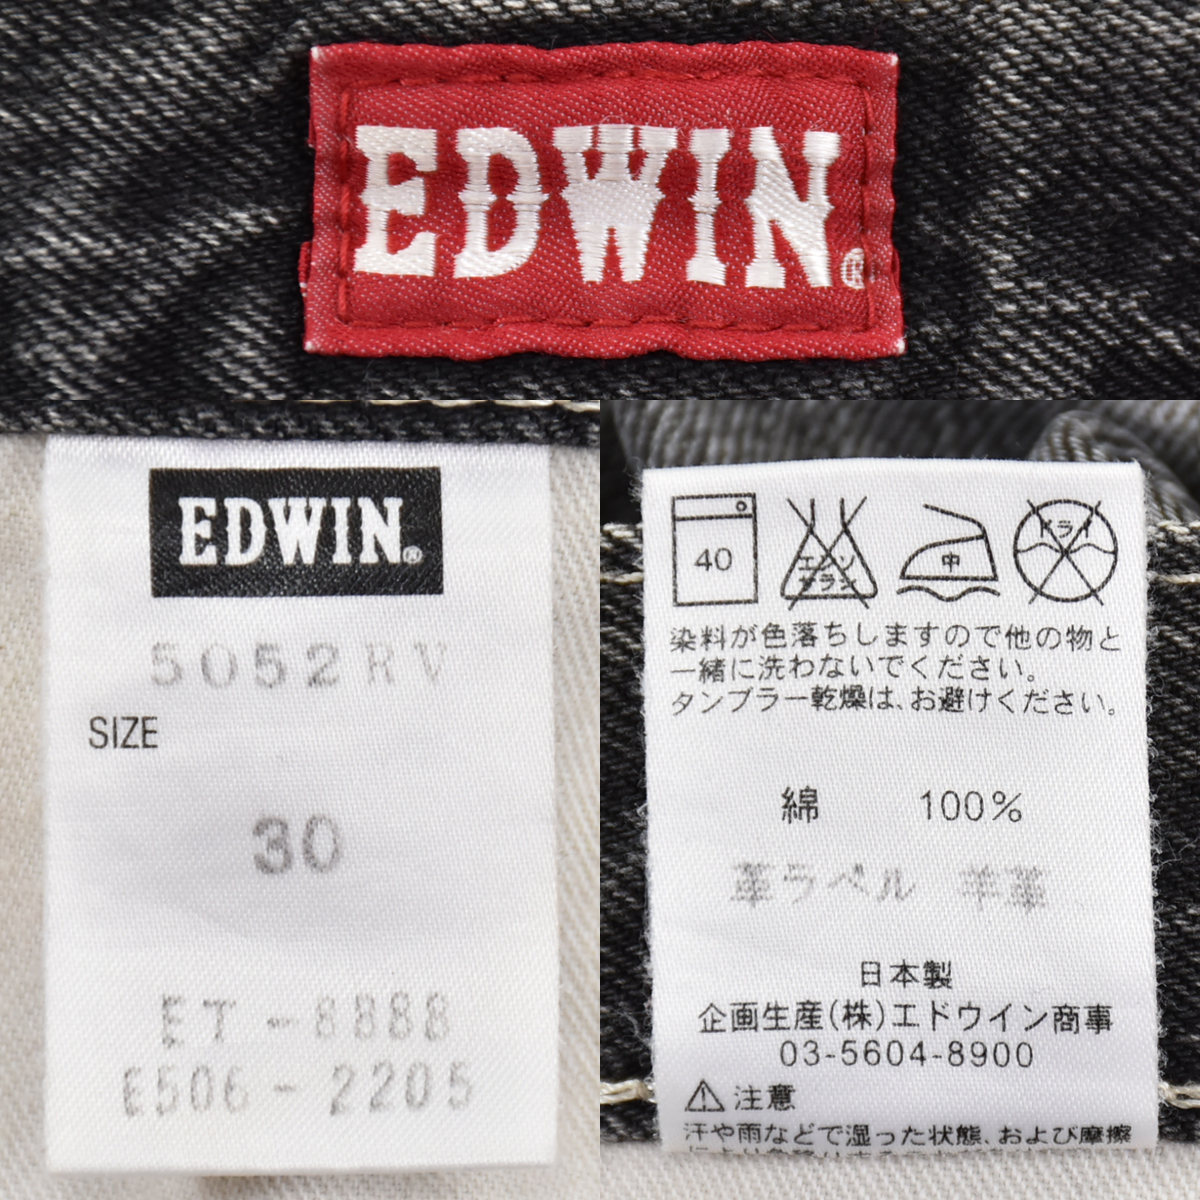 EDWIN エドウイン ★ 日本製 5052RV ブラック デニム ジーンズ パンツ 黒 メンズ 30_画像10